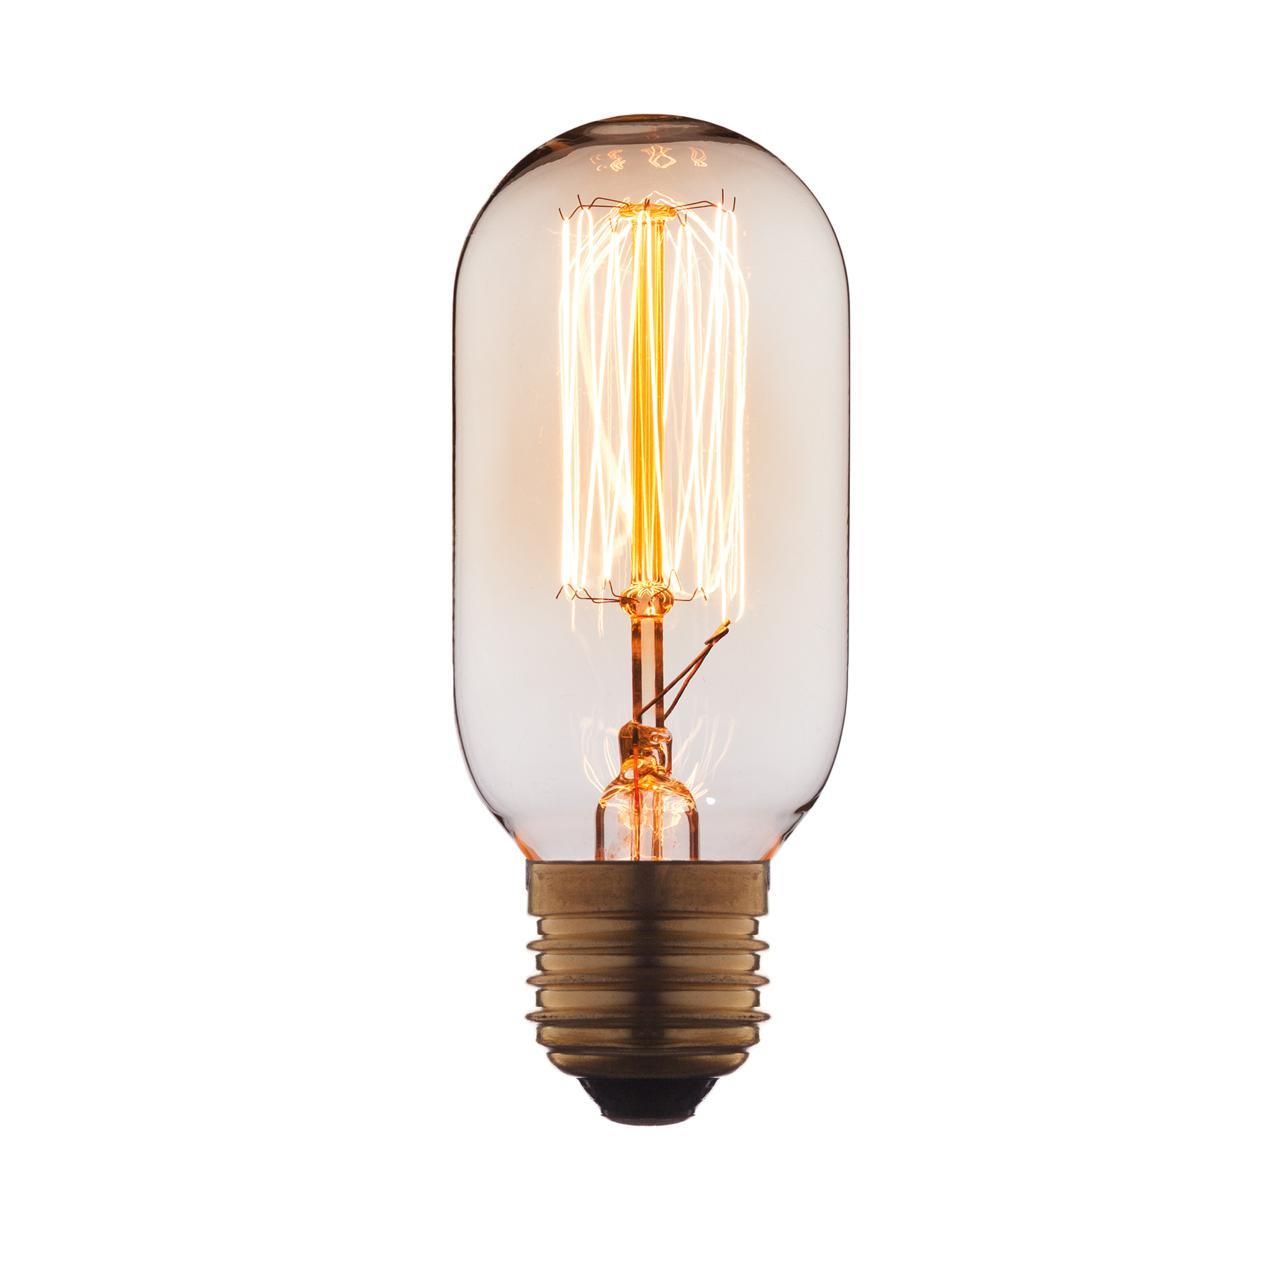 Ретро лампа Эдисона (Мини цилиндр) E27 40W 220V Edison Bulb